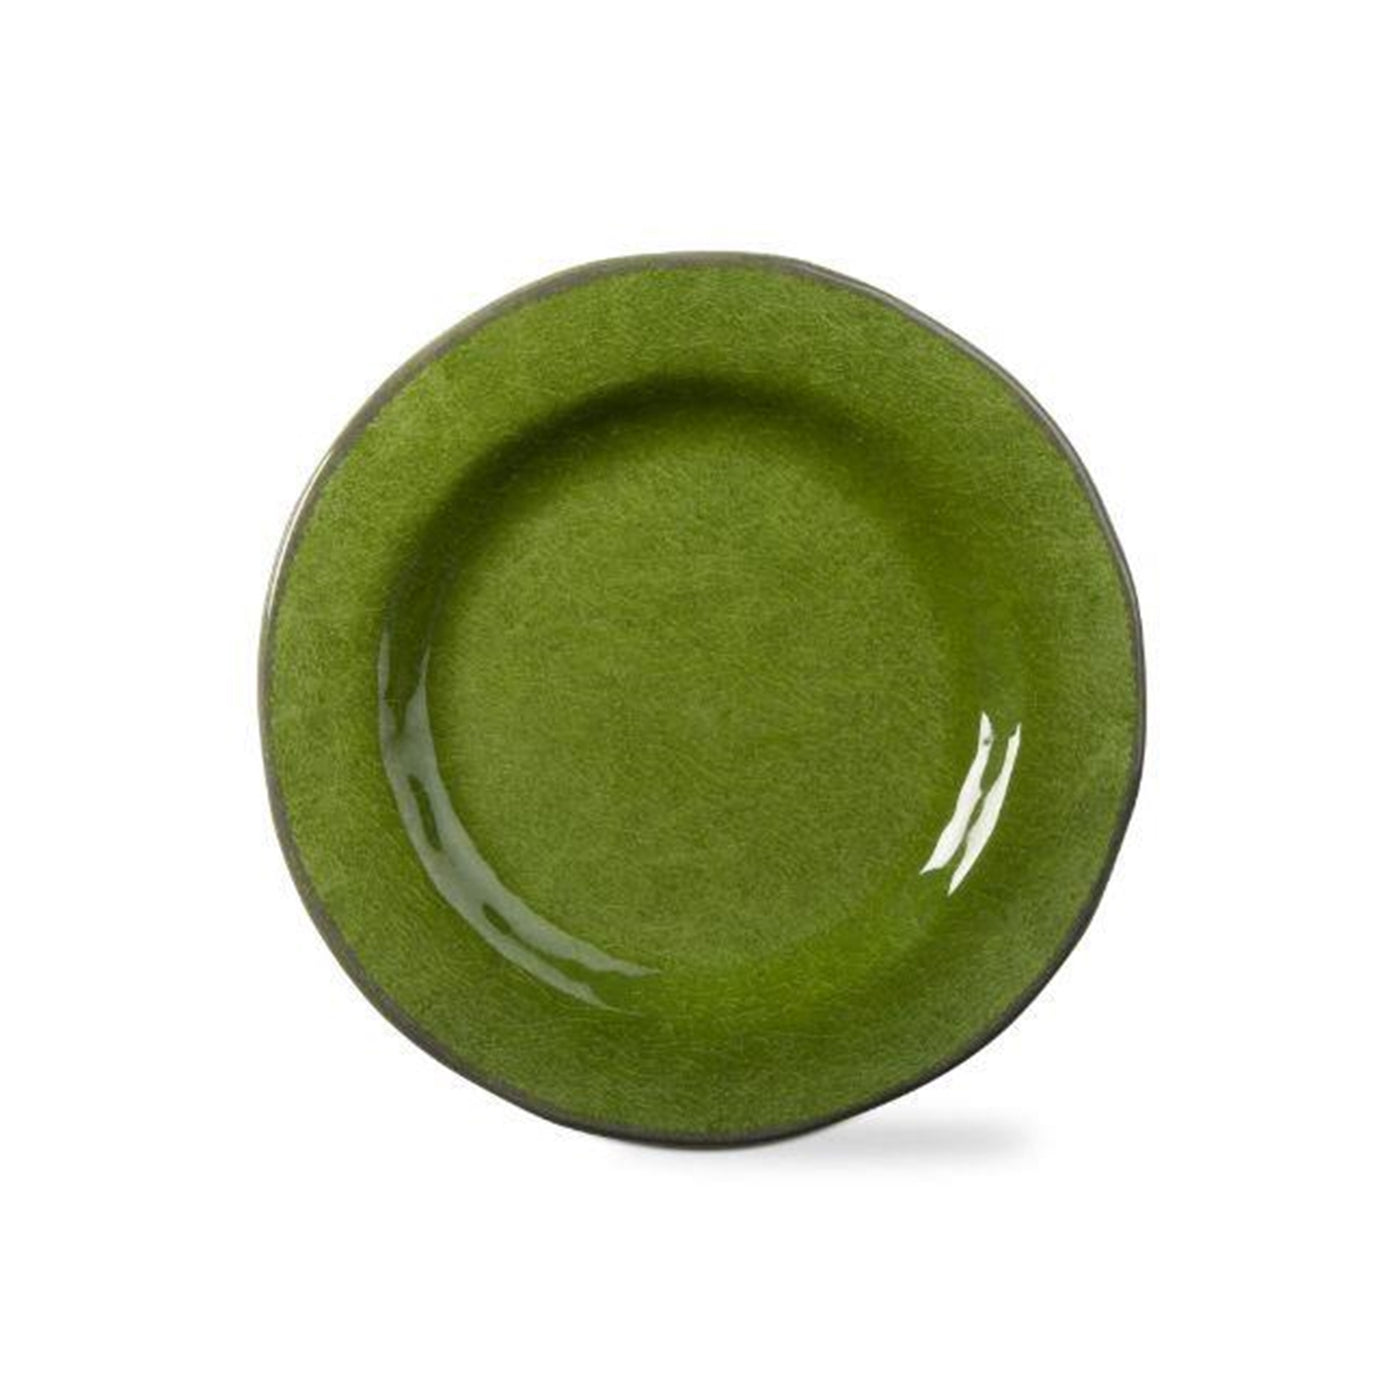 Veranda Melamine Dinner Plates - Green